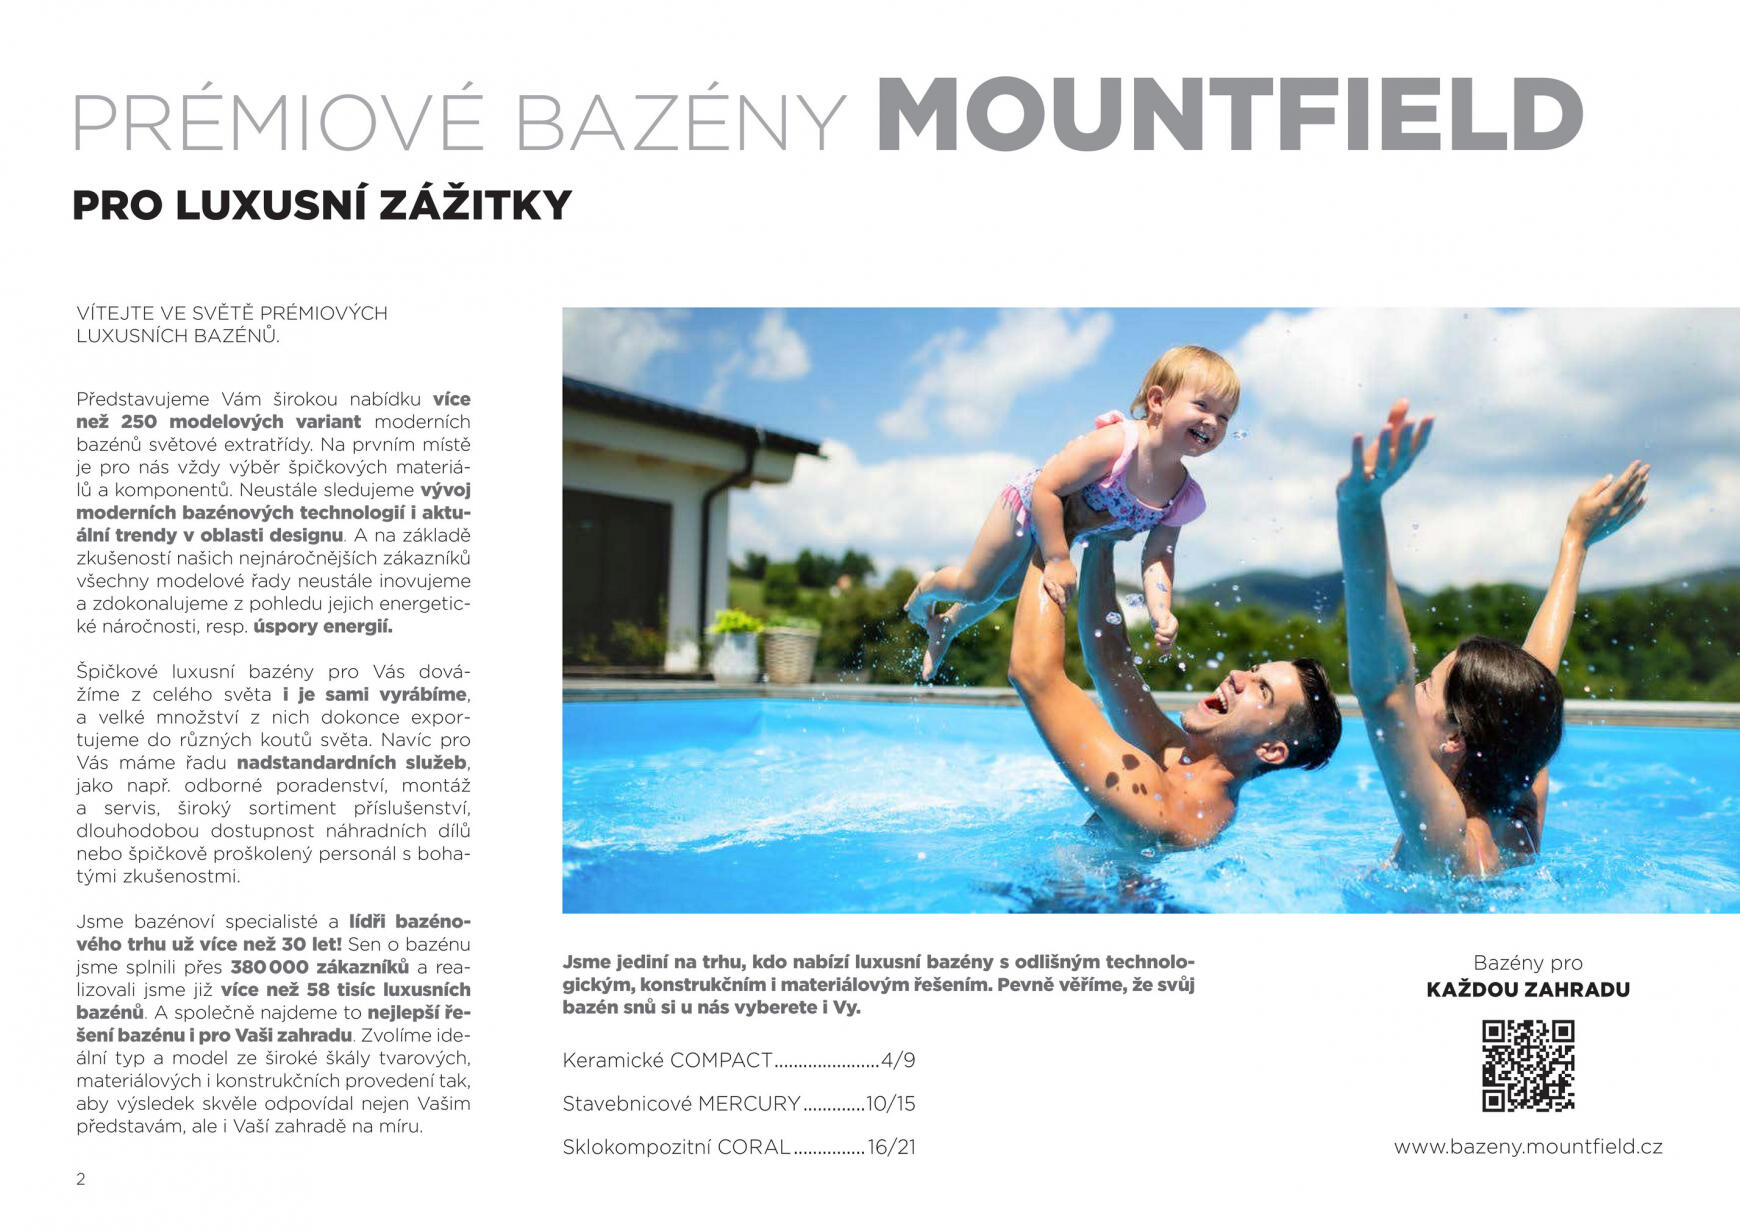 mountfield - Mountfield - Katalog prémiových bazénů platný od 01.07.2023 - page: 2